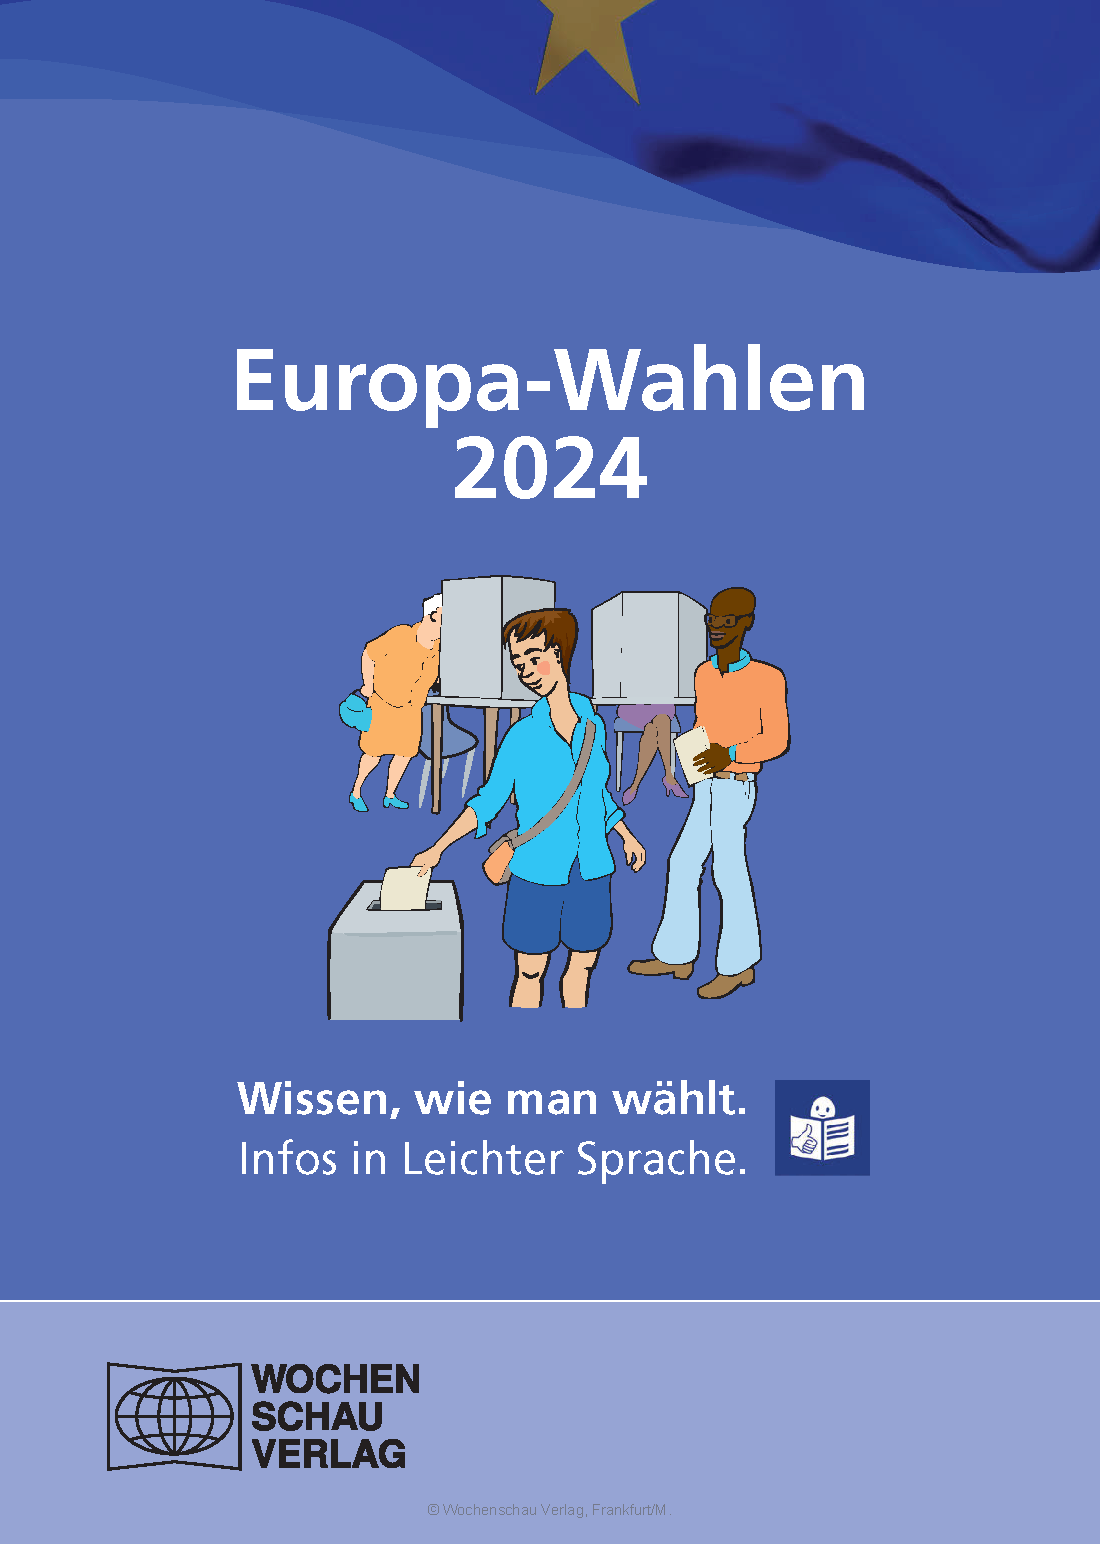 WOCHENSCHAU_-_Europa-Wahlen_2024_leichtesprache